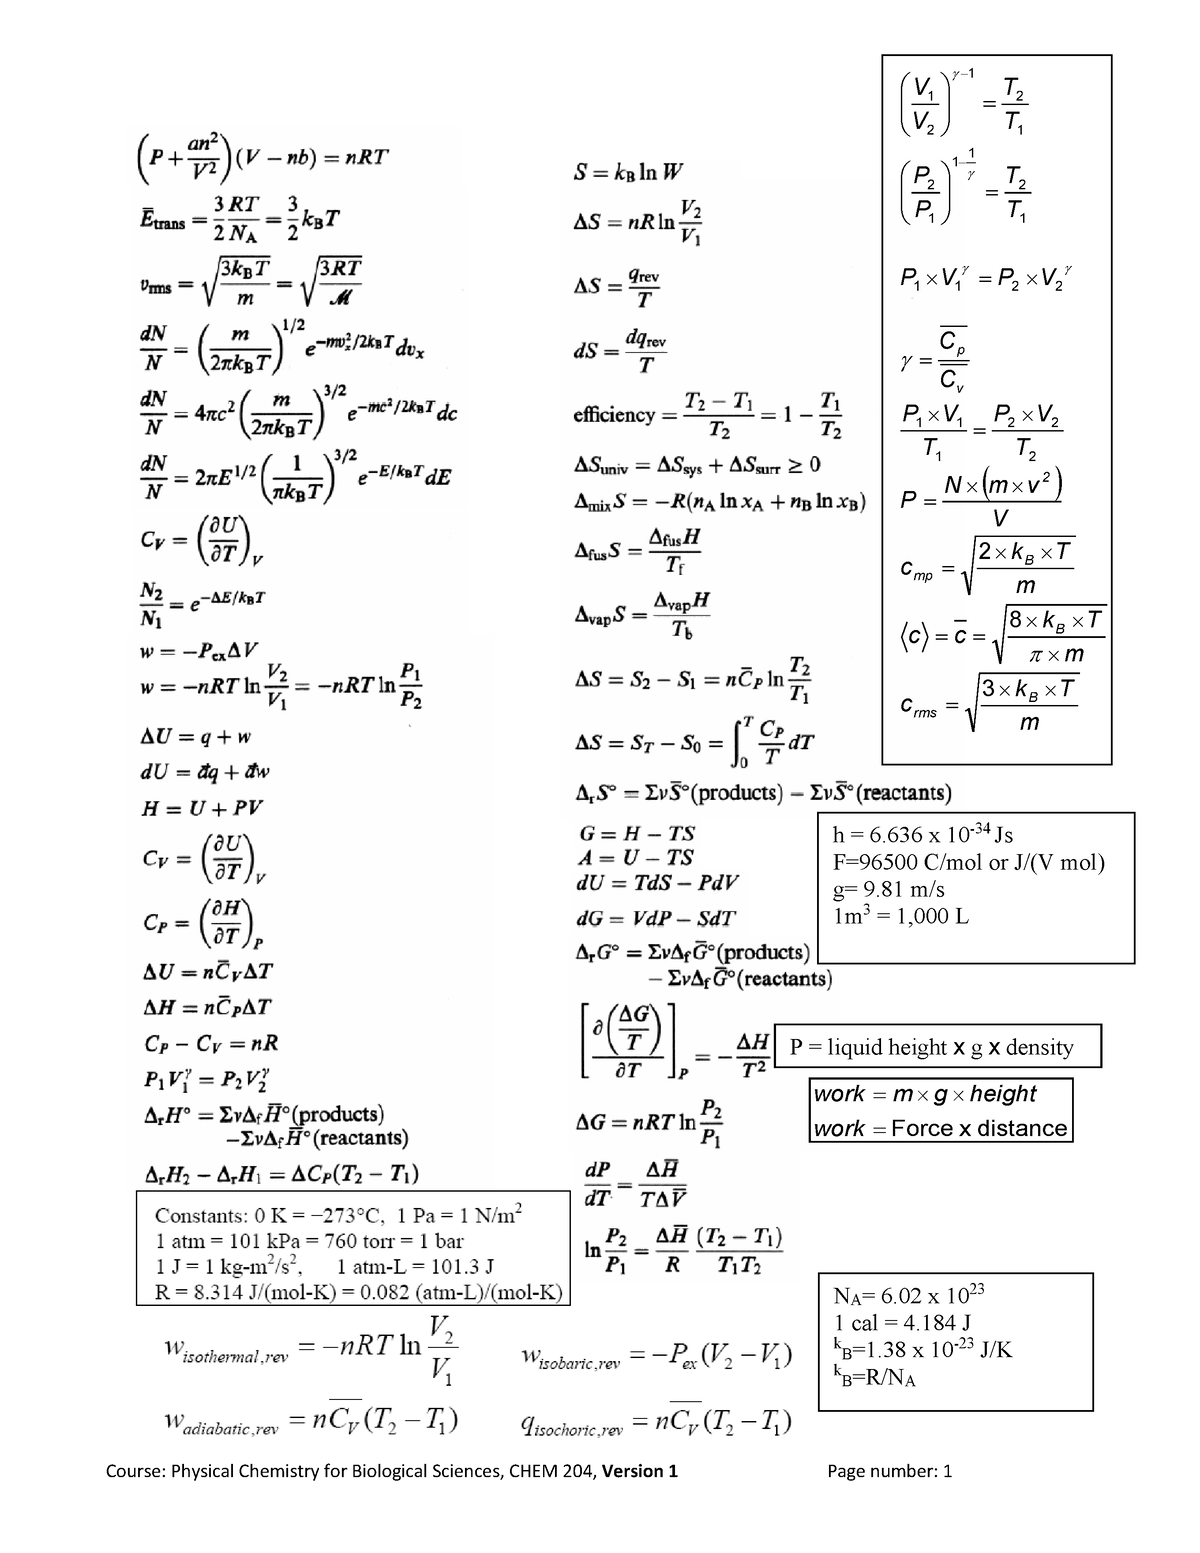 2022 Final Exam Equations Sheet - NA= 6 x 10 23 1 cal = 4 J k B=1 x 10 ...